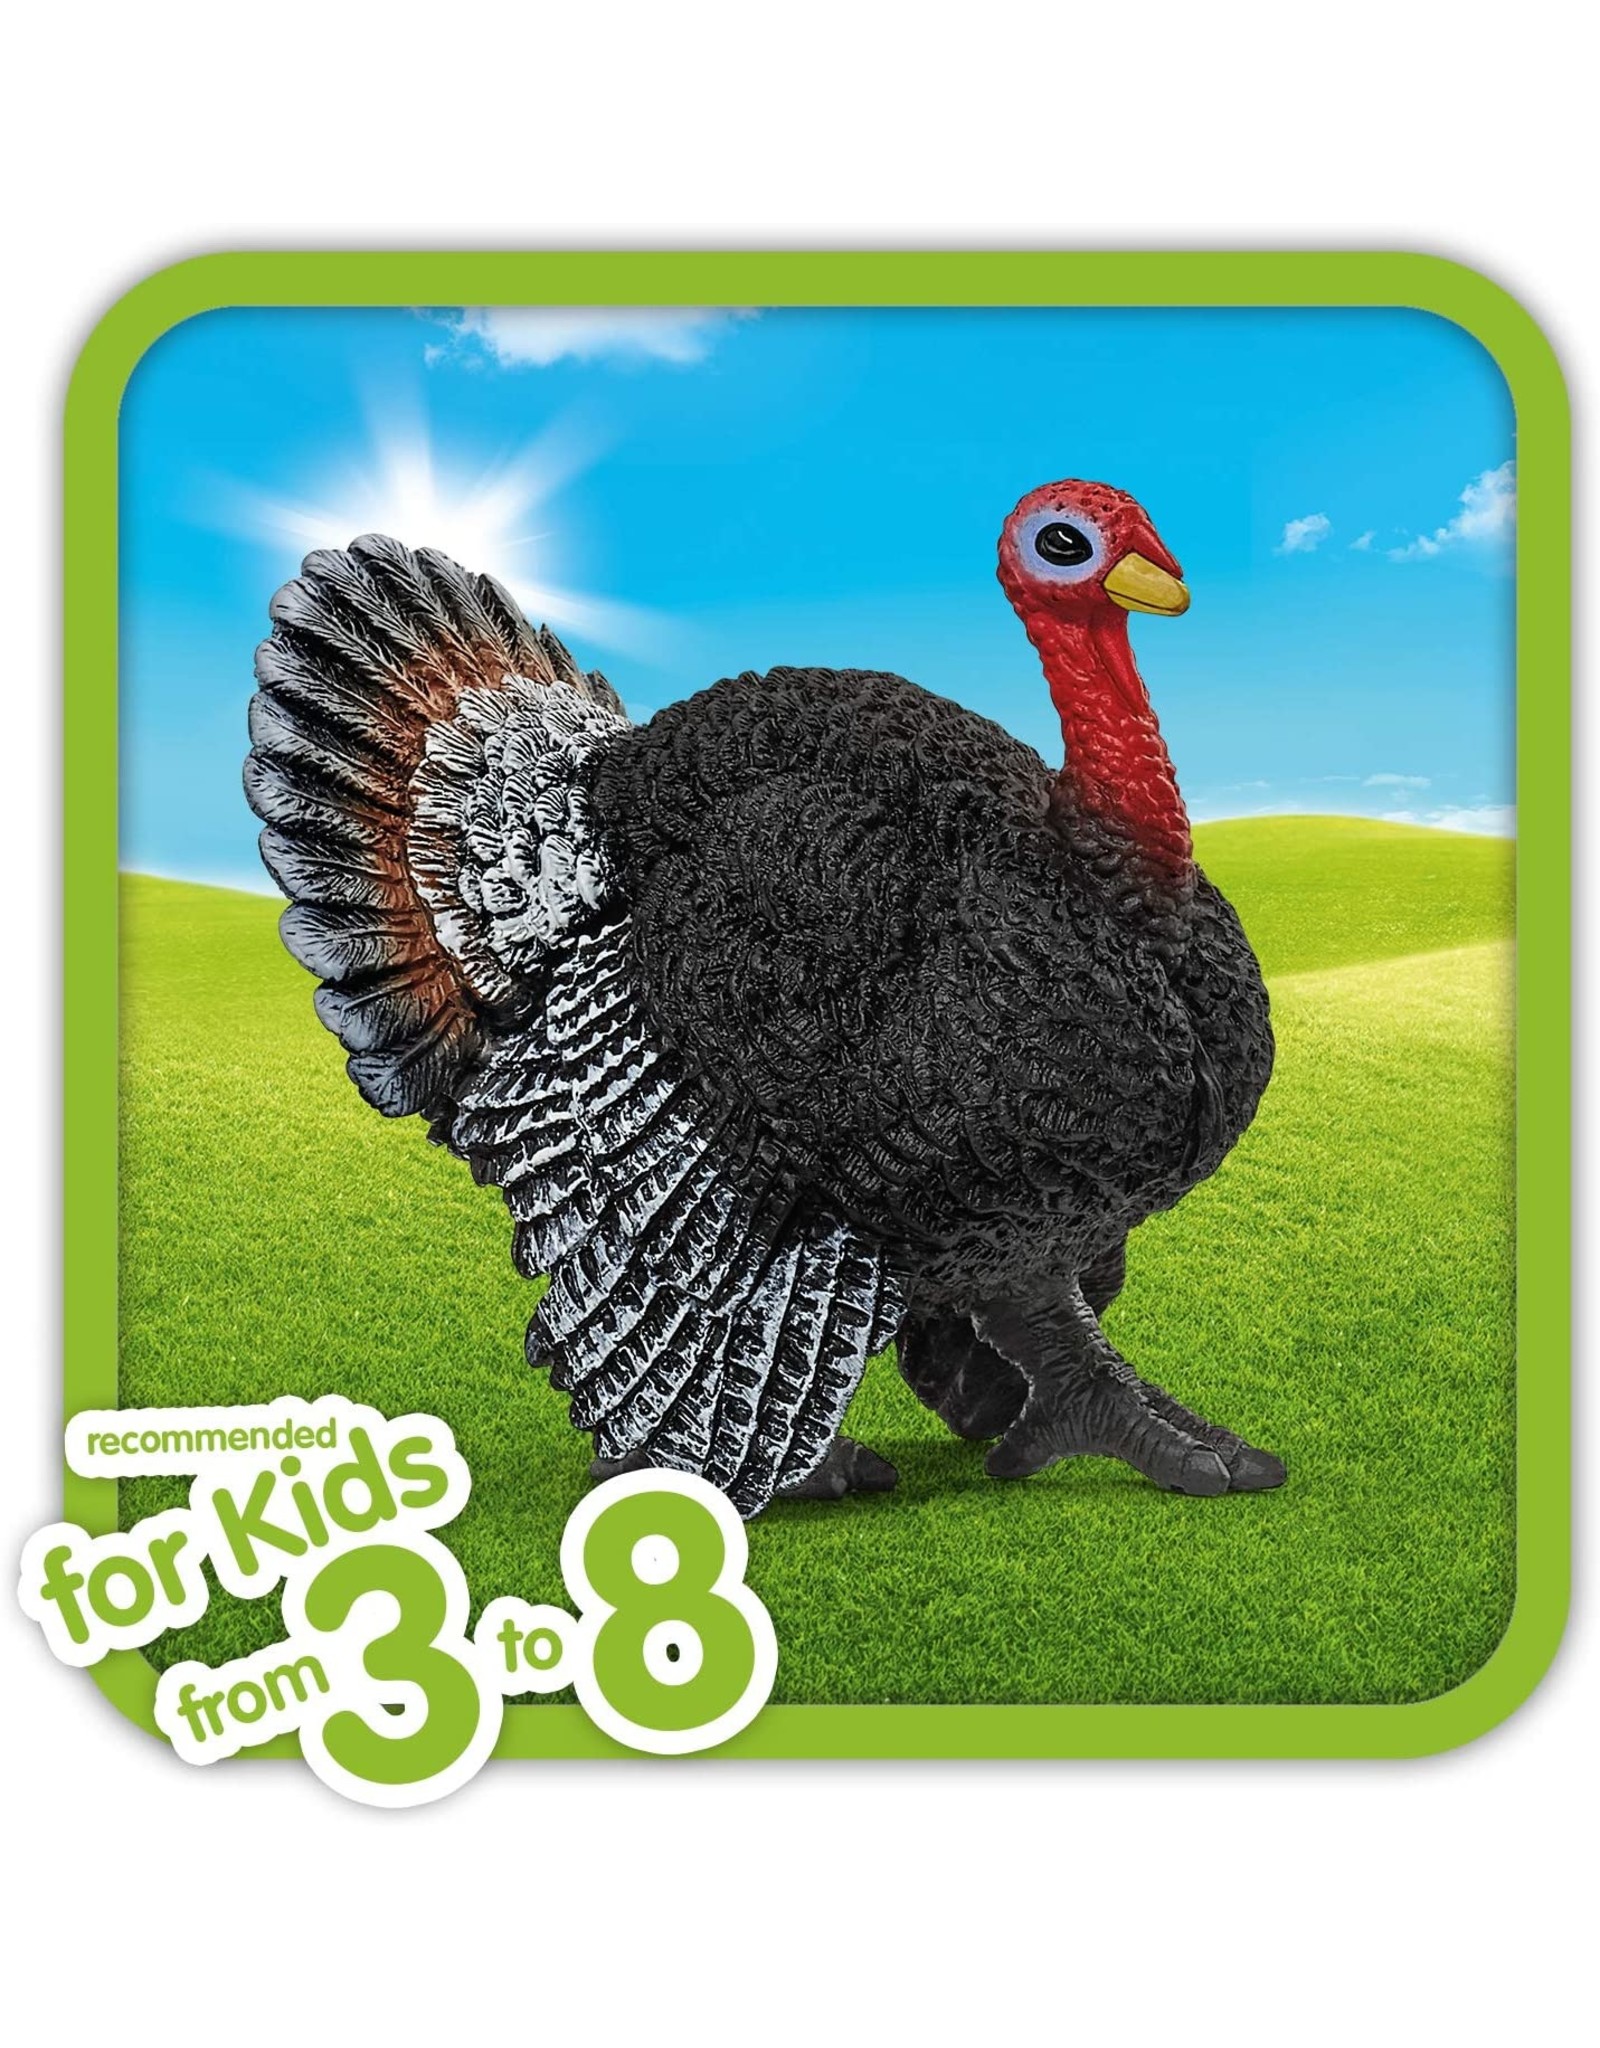 Schleich Turkey Animal Figure 13900 in Stock for sale online